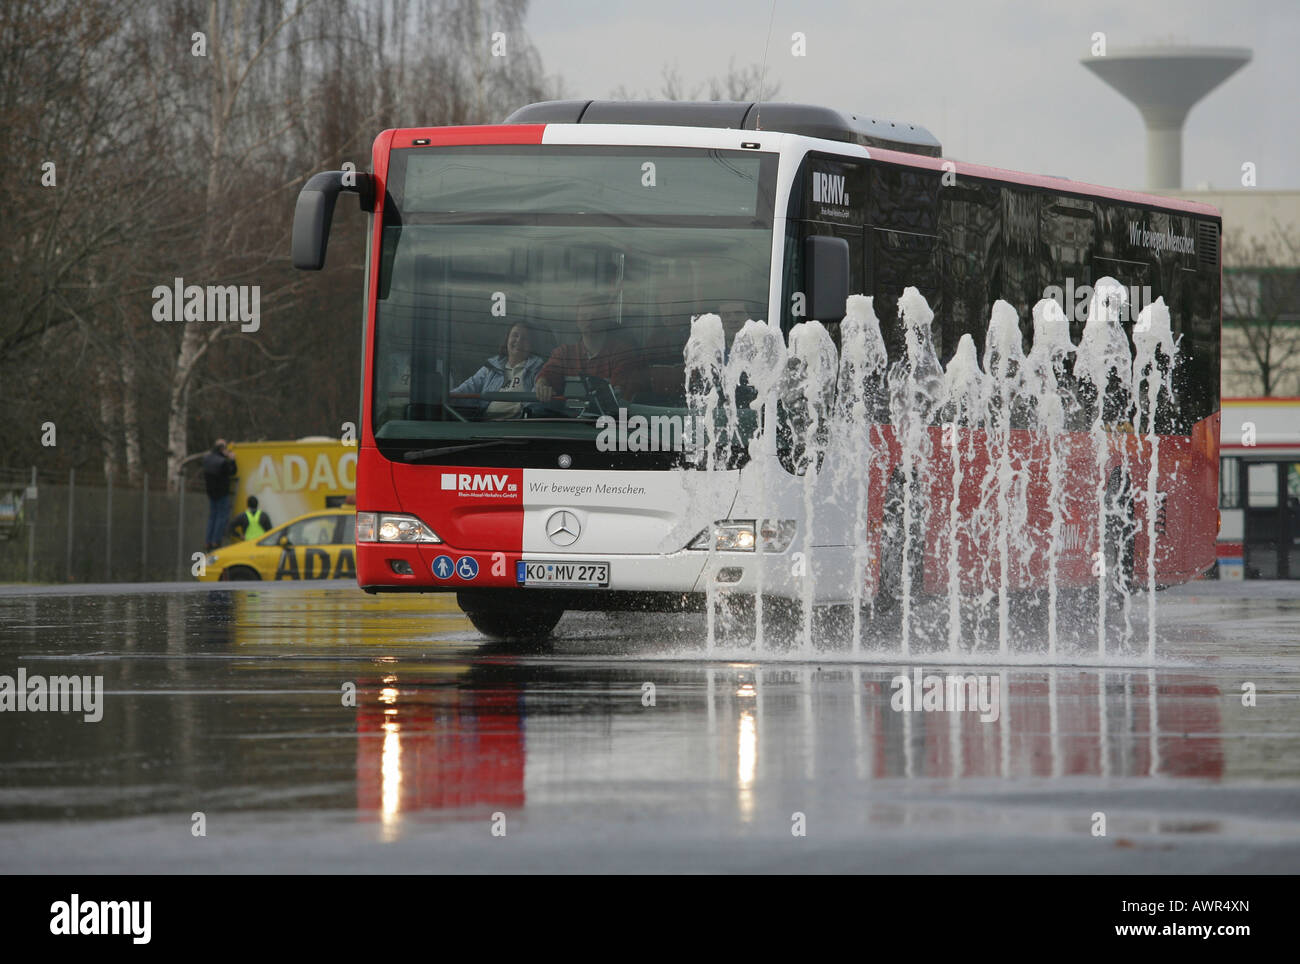 Busdrivers pendant un test de sécurité sur l'aquaplanage, Allemagne Banque D'Images